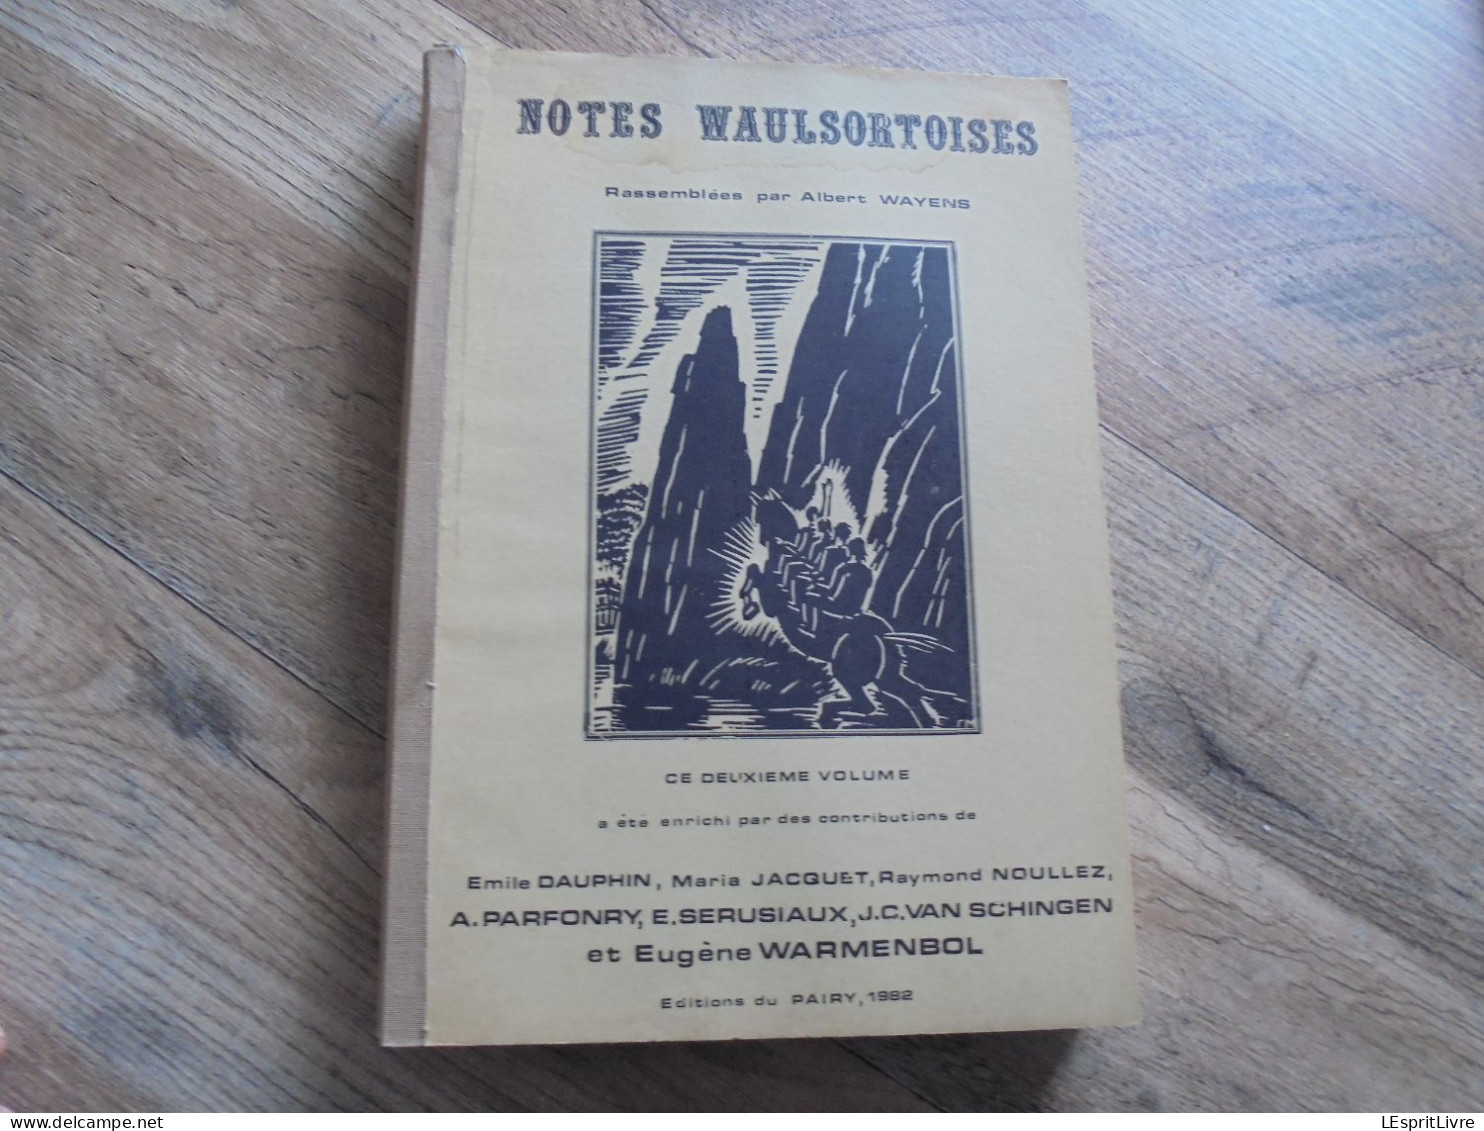 NOTES WAULSORTOISES 3 Volumes Rare ! A Wayens Régionalisme Waulsort Hotel Hastière Meuse Château Thierry Chemin de Fer